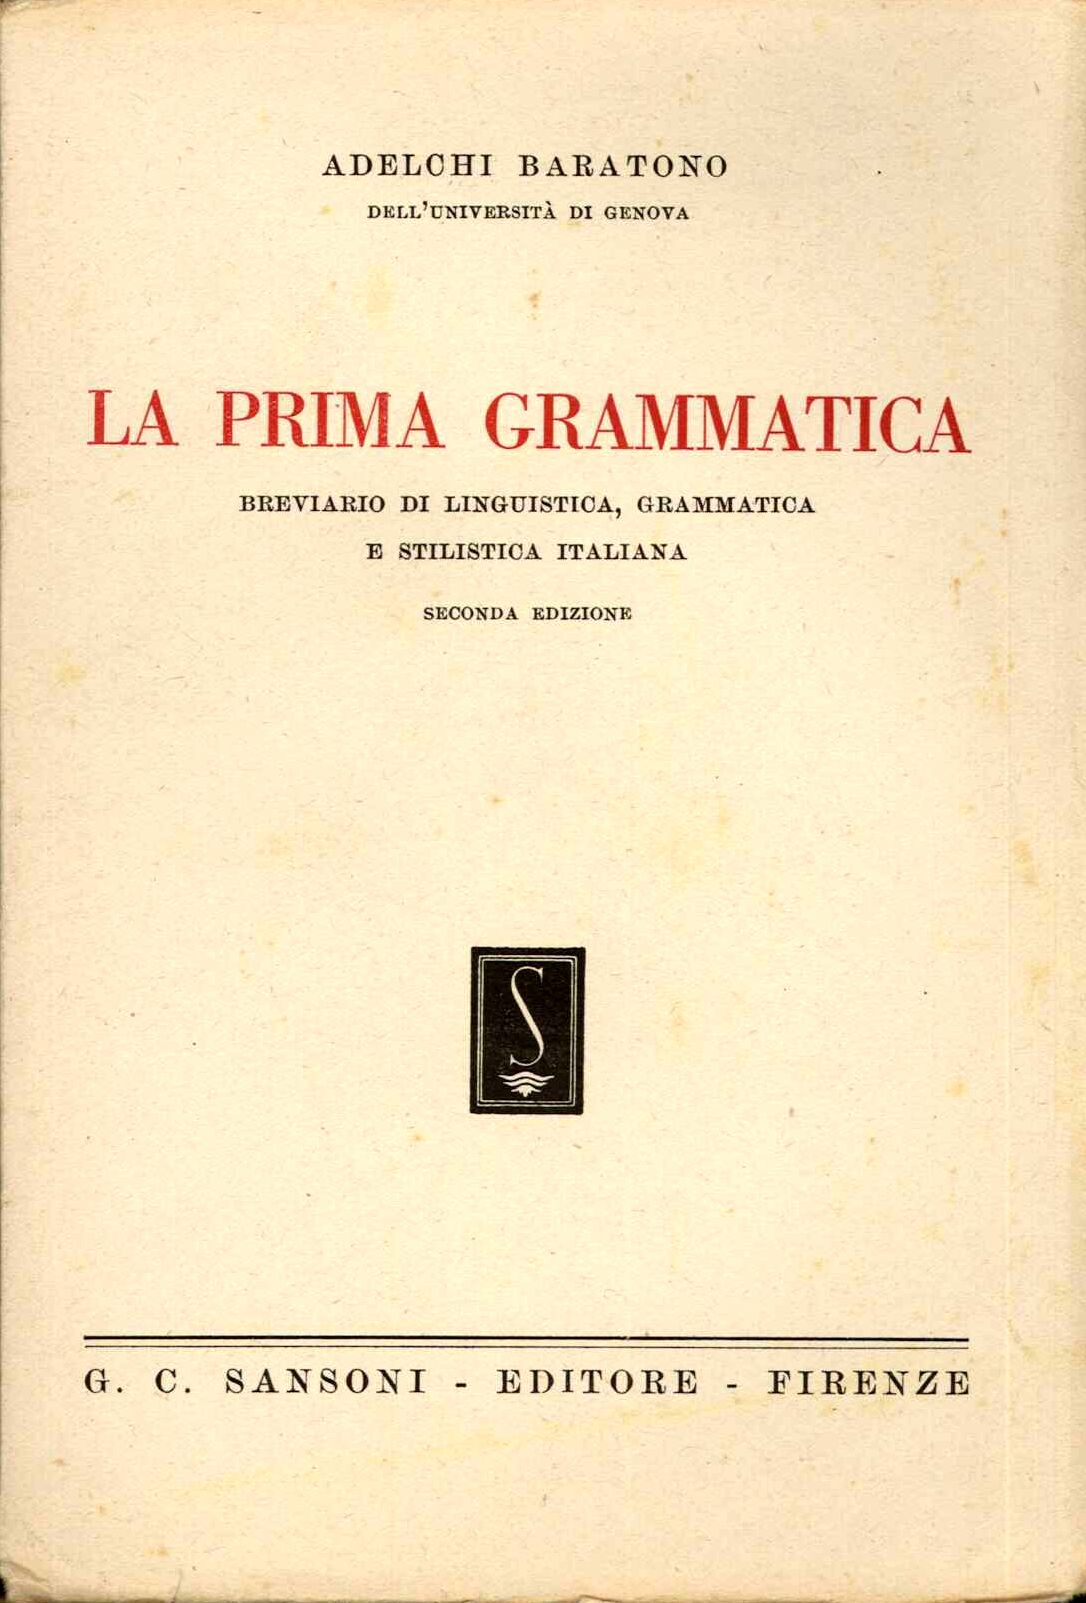 Prima grammatica (La)